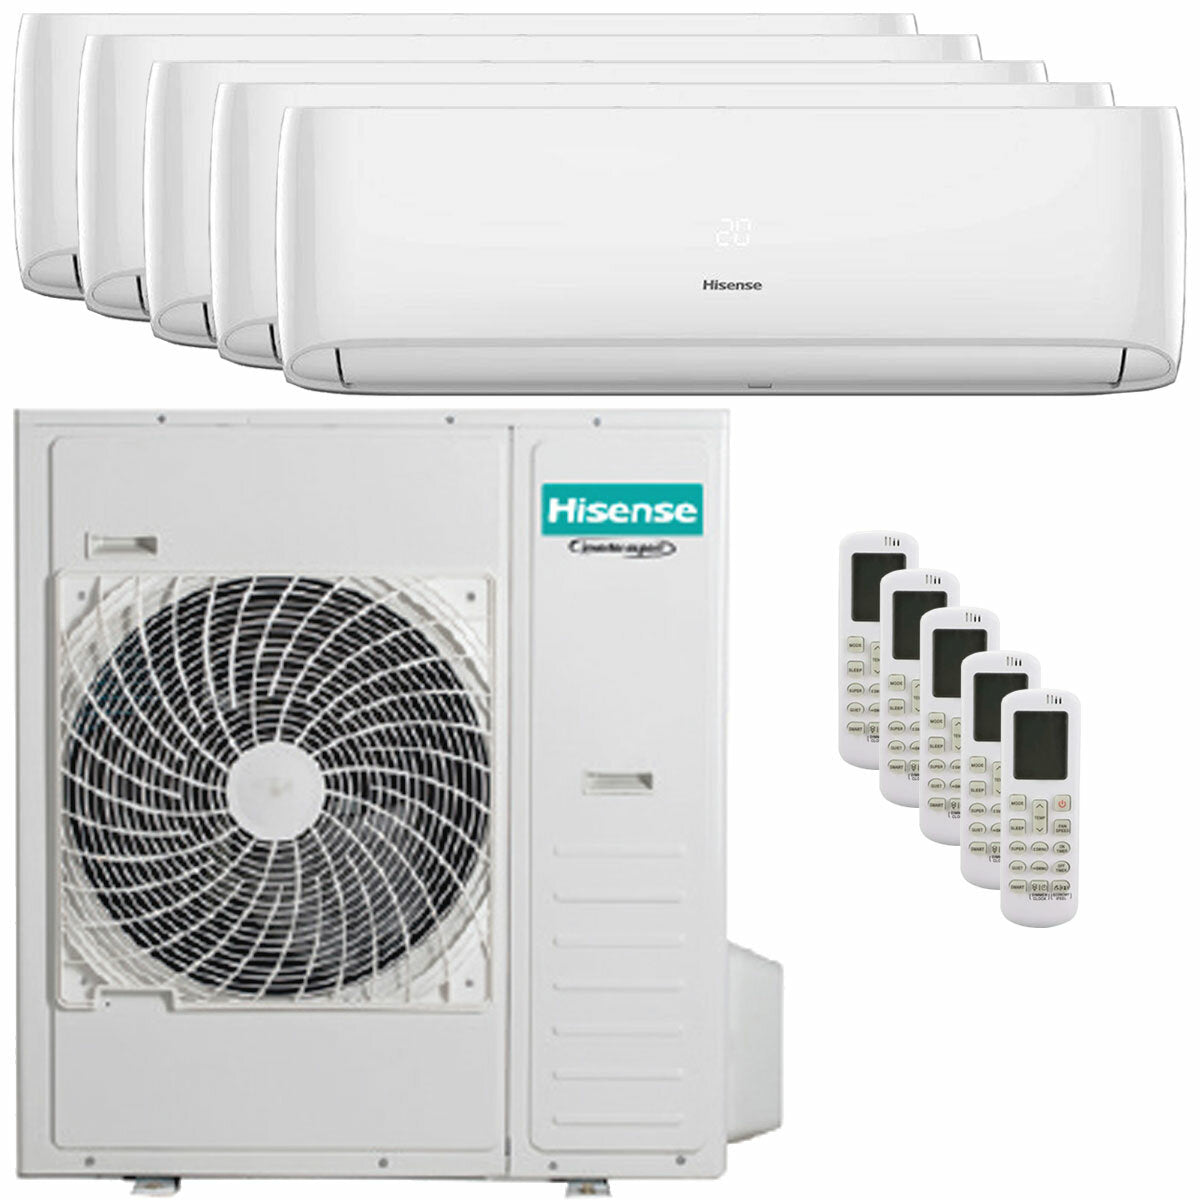 Hisense Hi-Comfort penta split air conditioner 9000+9000+9000+9000+18000 BTU wifi inverter outdoor unit 12.5 kW